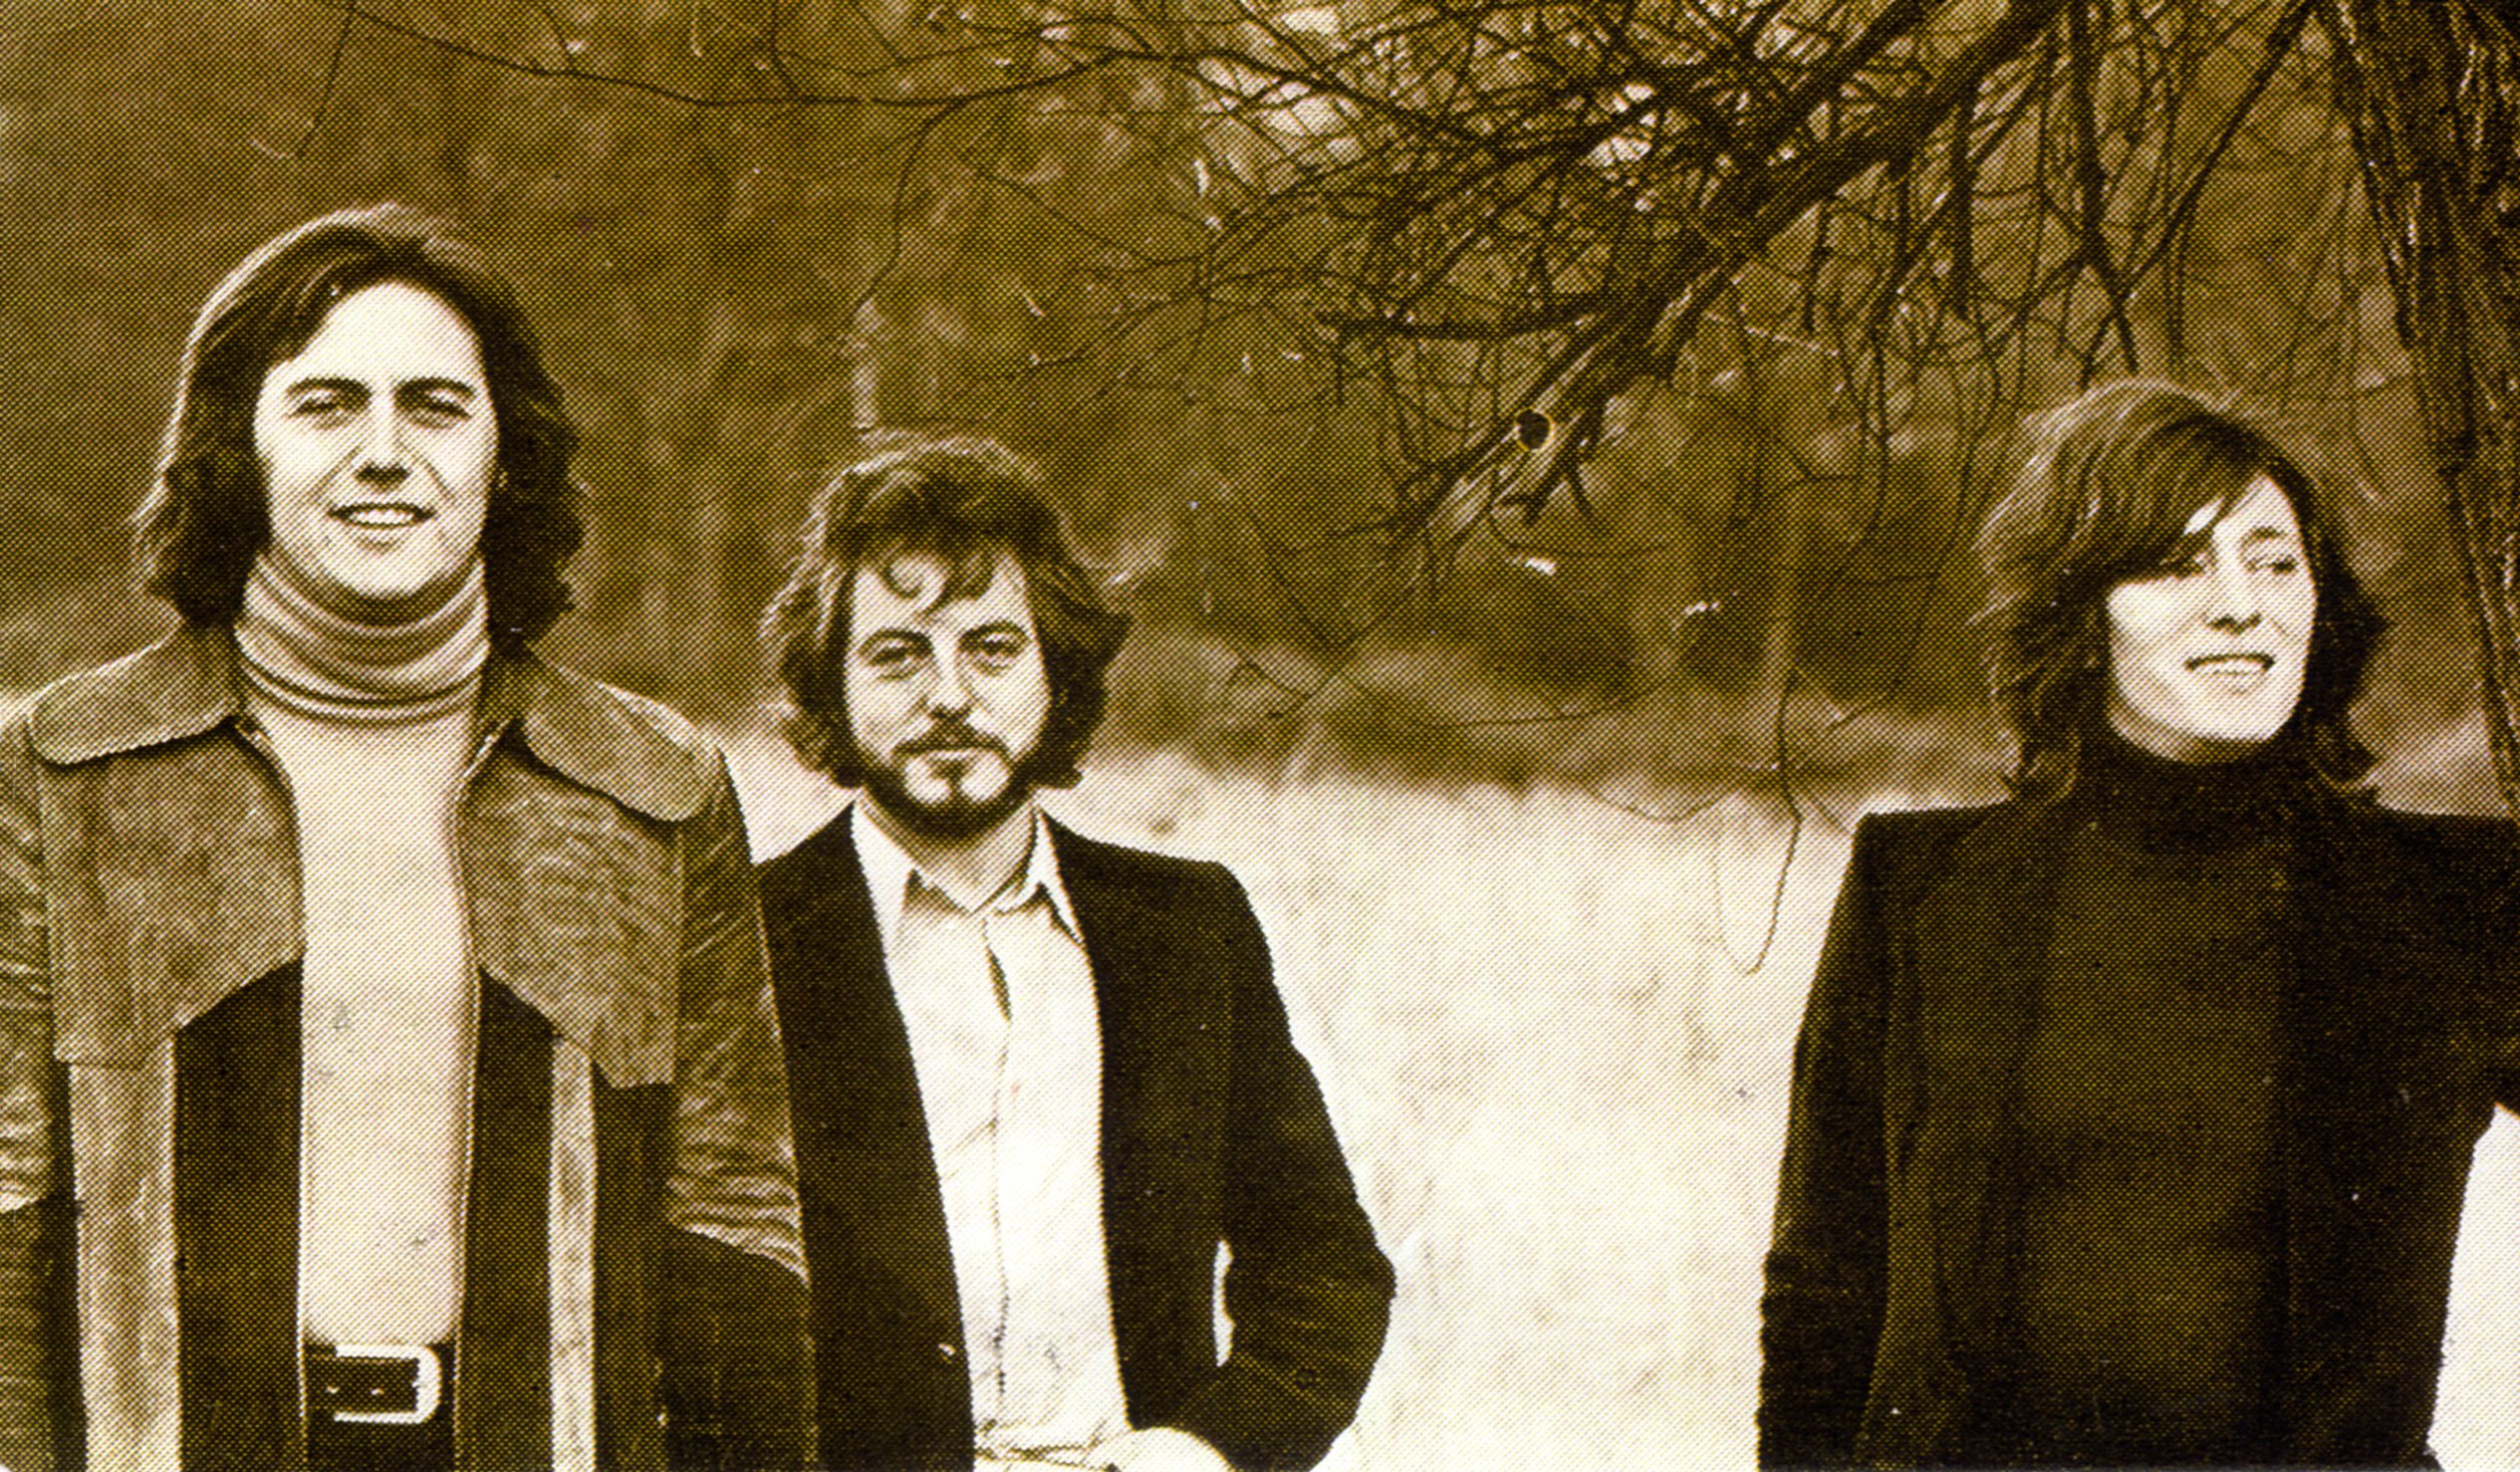 A principios de los sesenta tocaba la guitarra en la banda Crash (en el centro), que hacía versiones de grupos como The Beatles